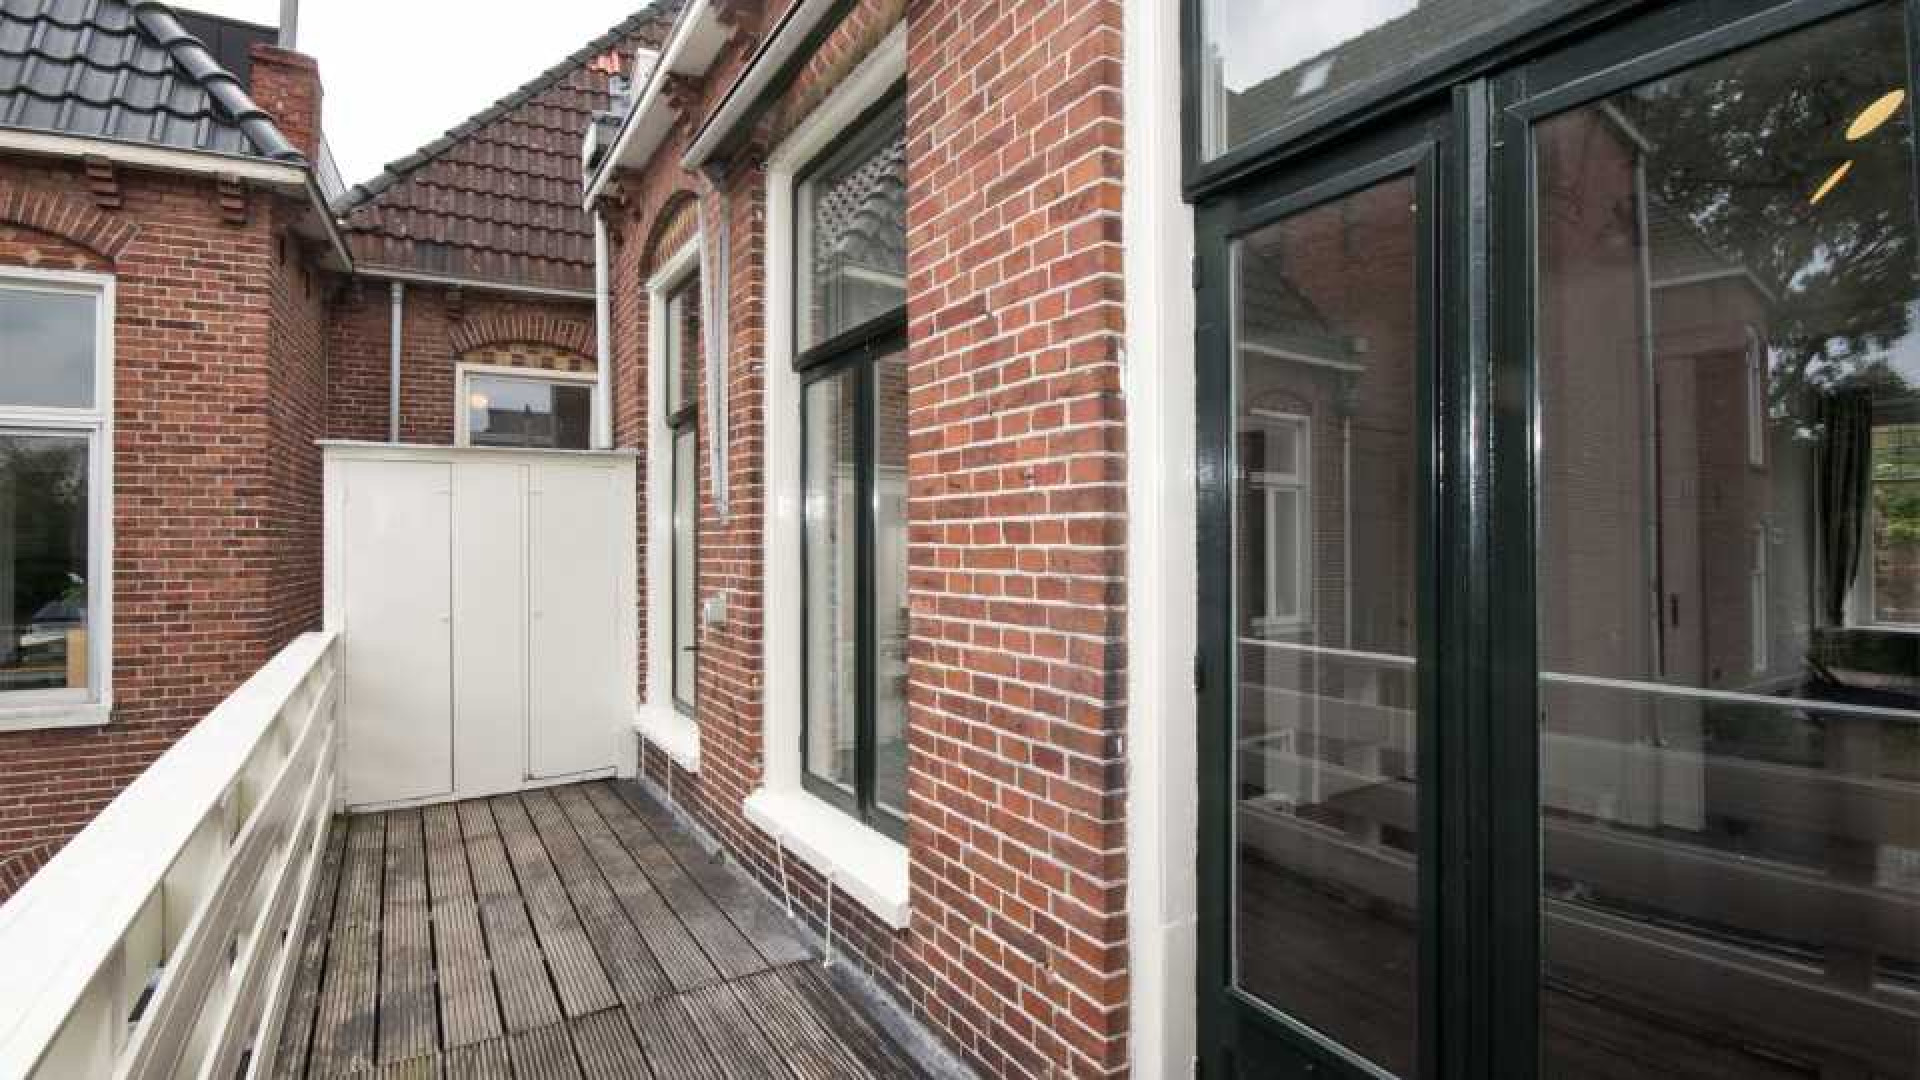 Victoria Koblenko en haar vriend Levchenko zetten hun dubbele bovenhuis in Groningen te koop. Zie foto's 9